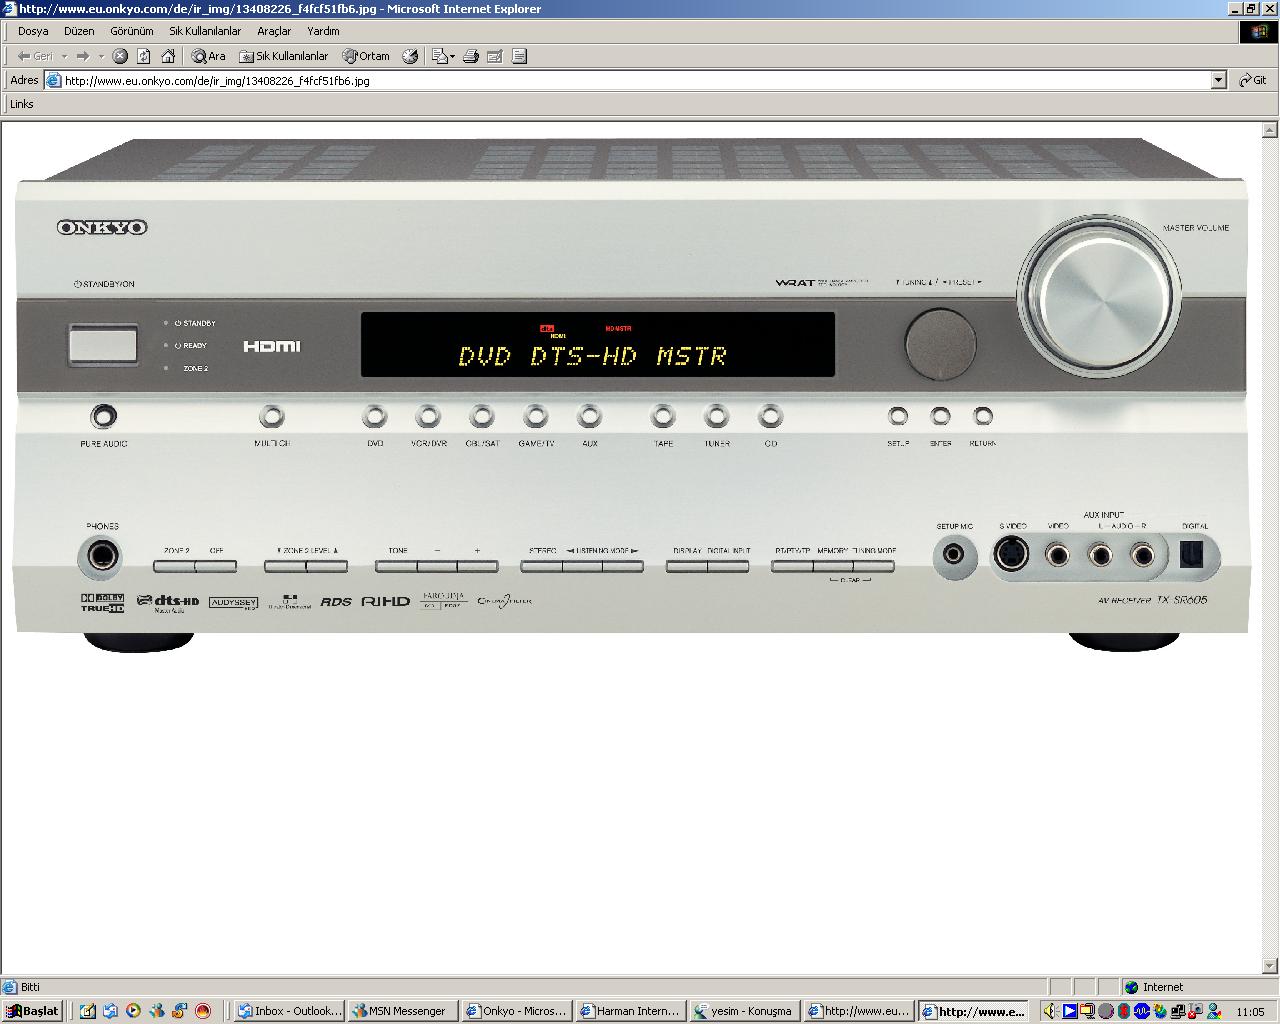  ONKYO 605 ile yeni nesil ses formatları